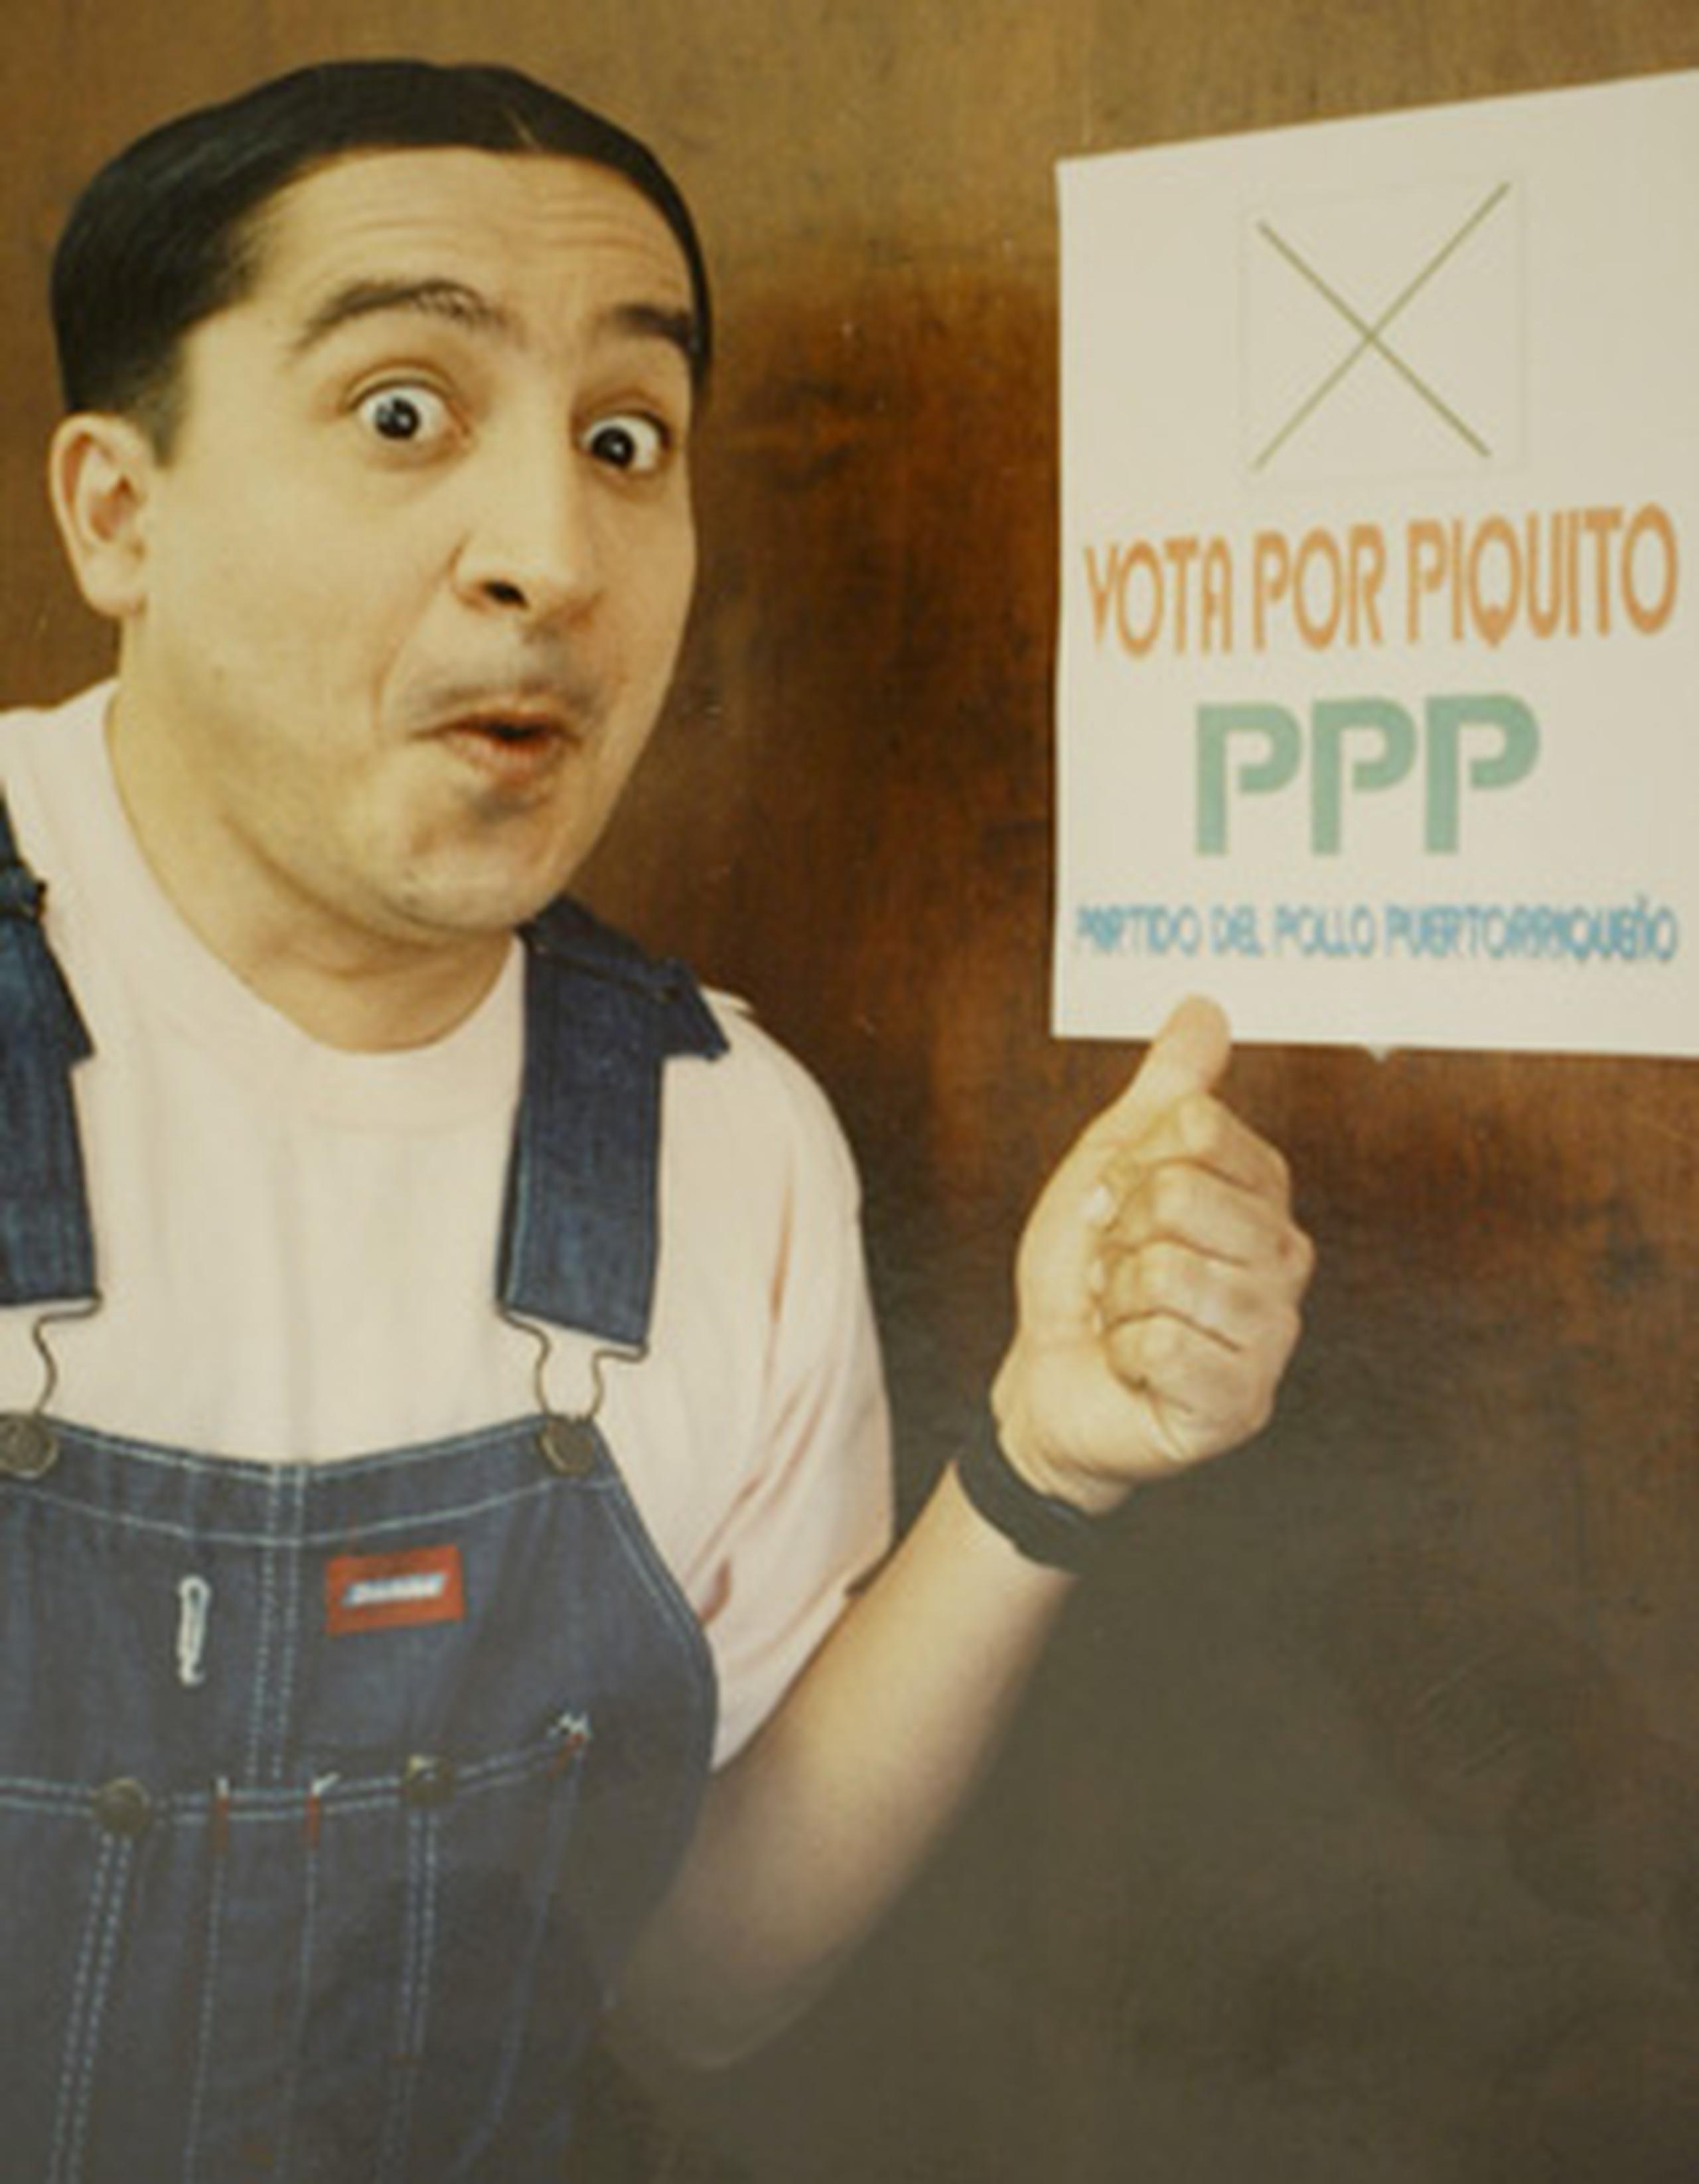 Uno de sus personajes más conocidos, Piquito, nació en 1989 en el desaparecido programa del mediodía "Fiesta", en el Canal 11. (Archivo)